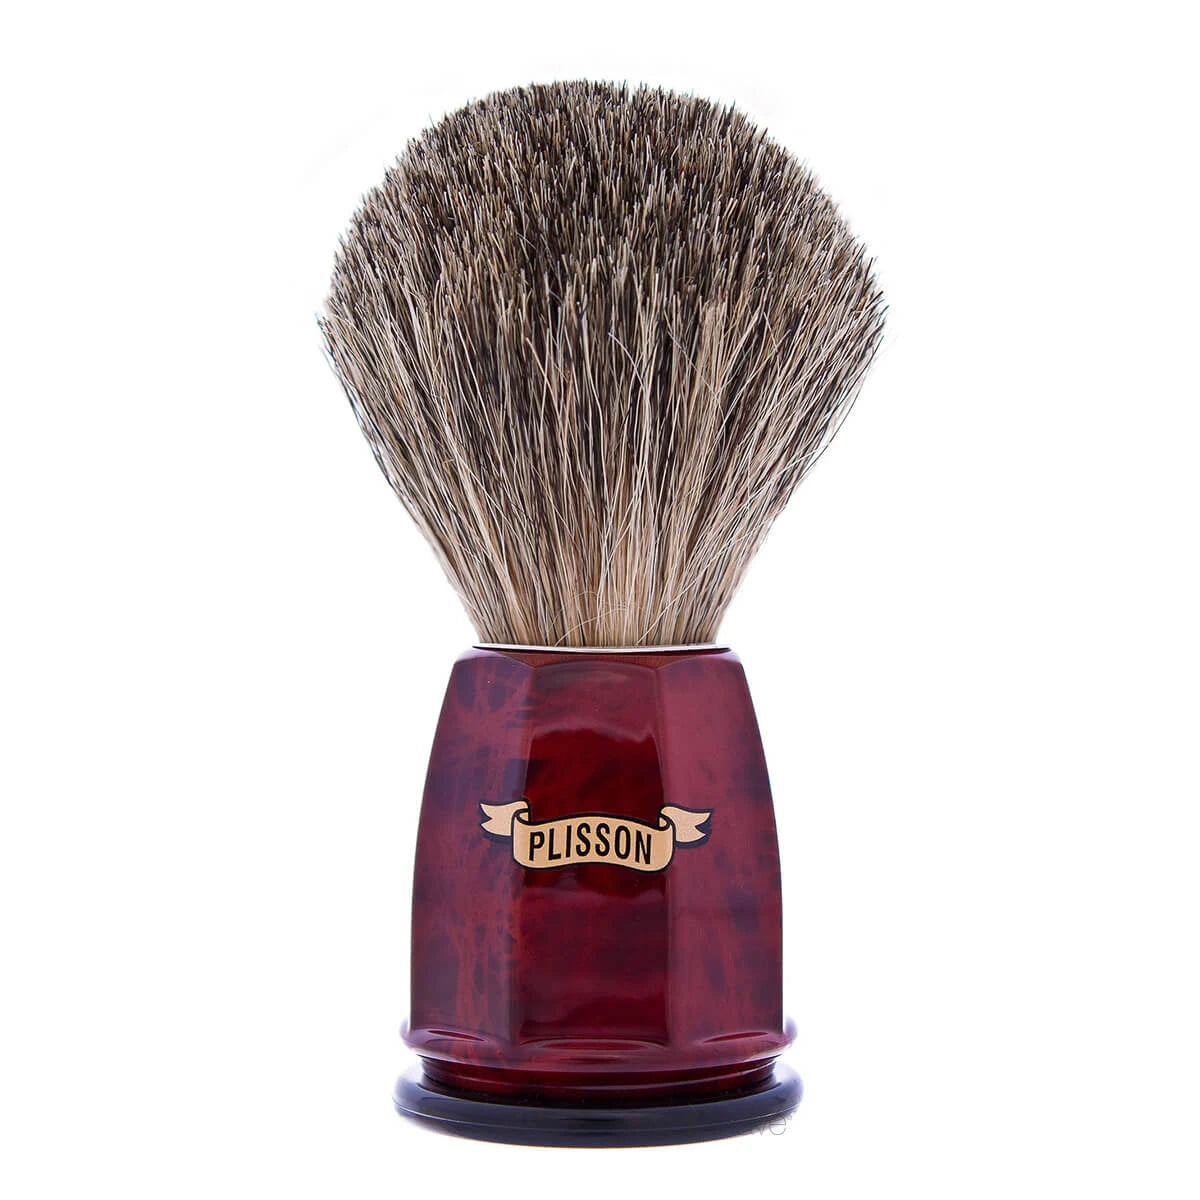 Plisson Shaving Brush, Russian Grey Badger & Imit. Walnut- Size 12